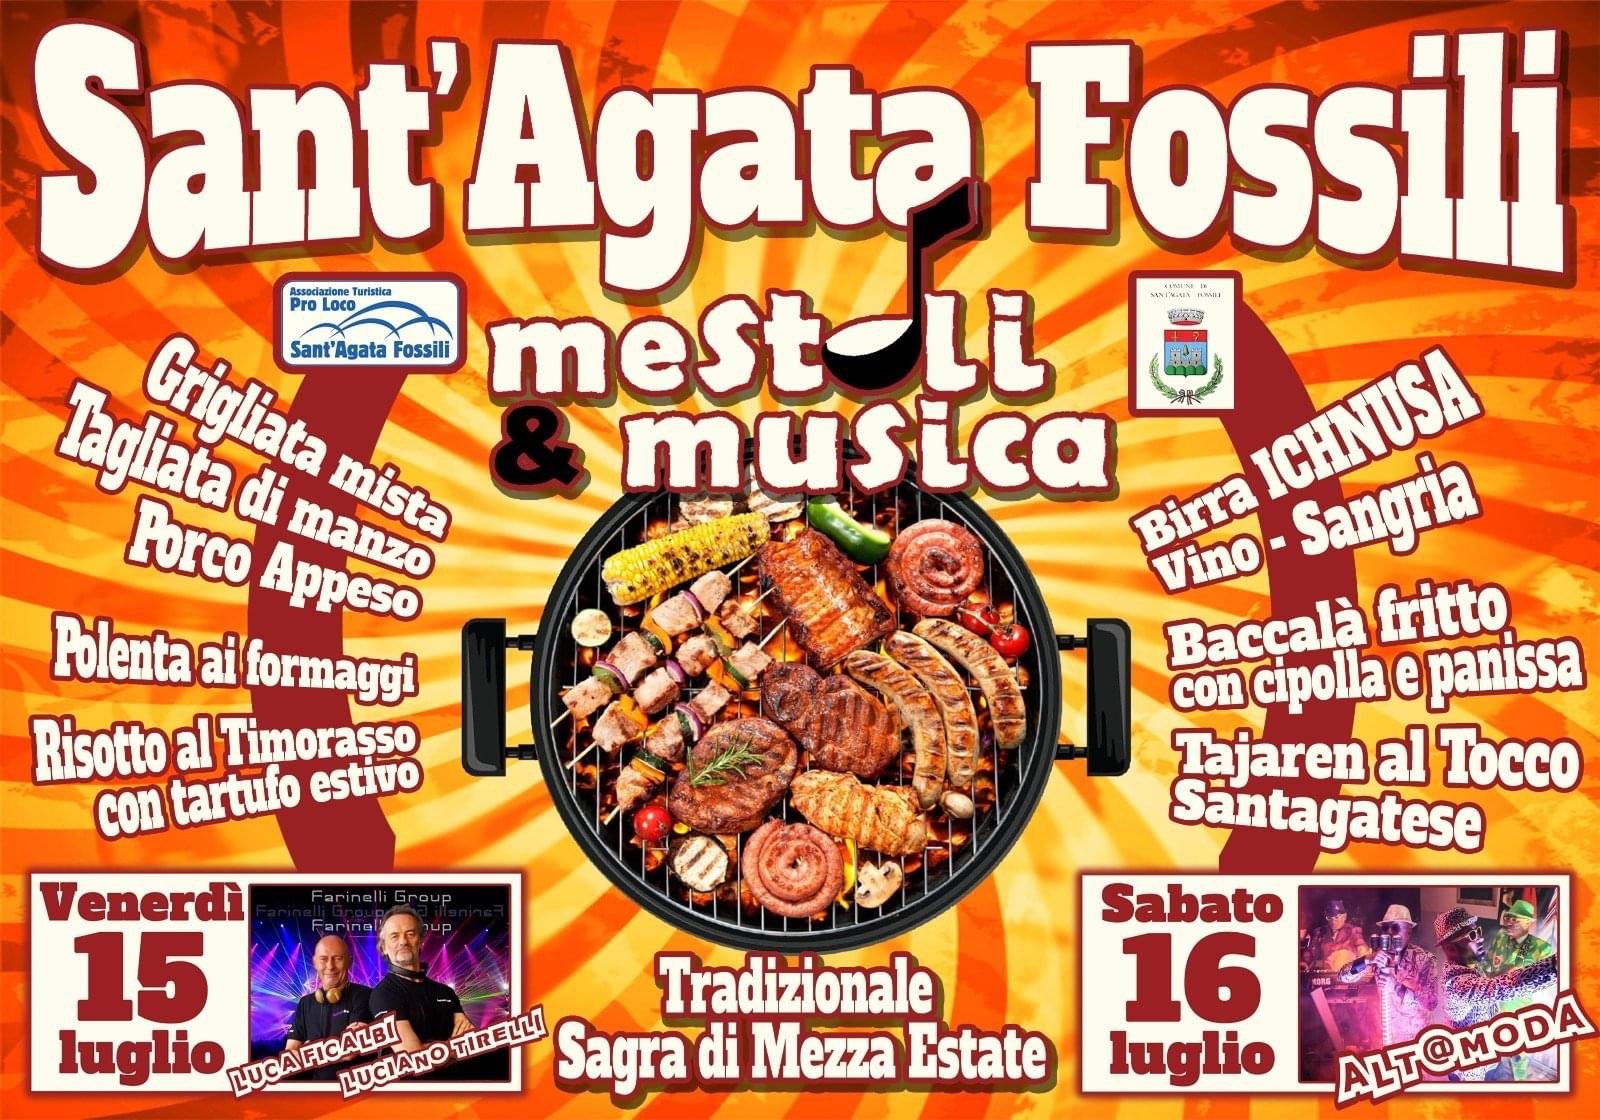 Dal 15 al 16 luglio a Sant’Agata Fossili “Mestoli e musica”